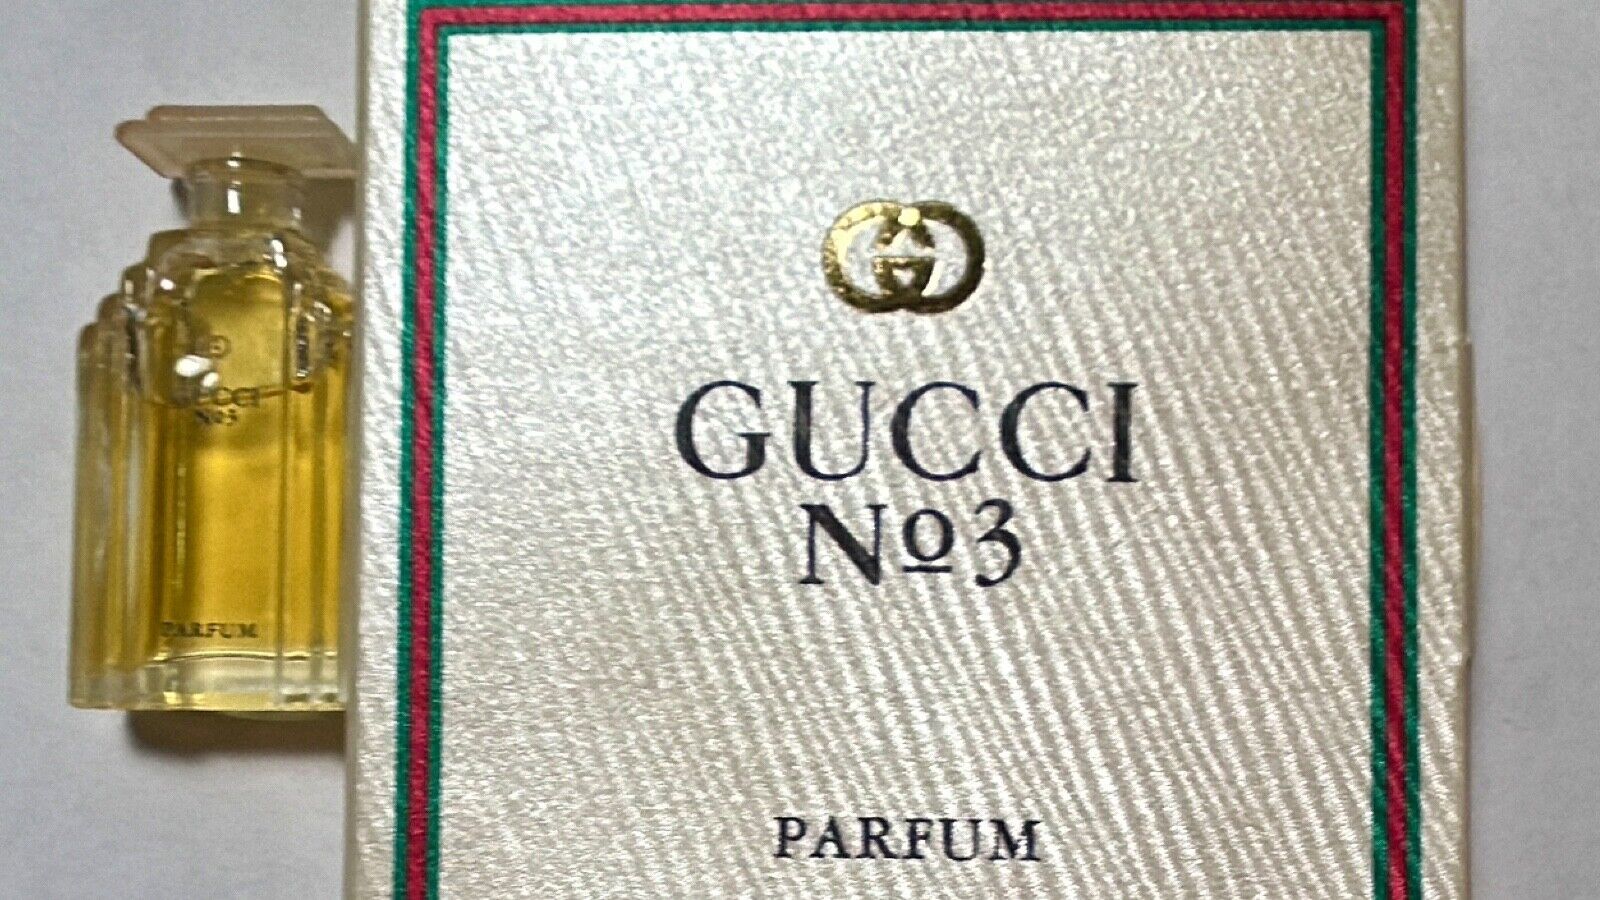 Gucci No 3 Parfum 0.14 Fl Oz 3ml Miniature Perfume  Vintage plus Lululemon BONUS